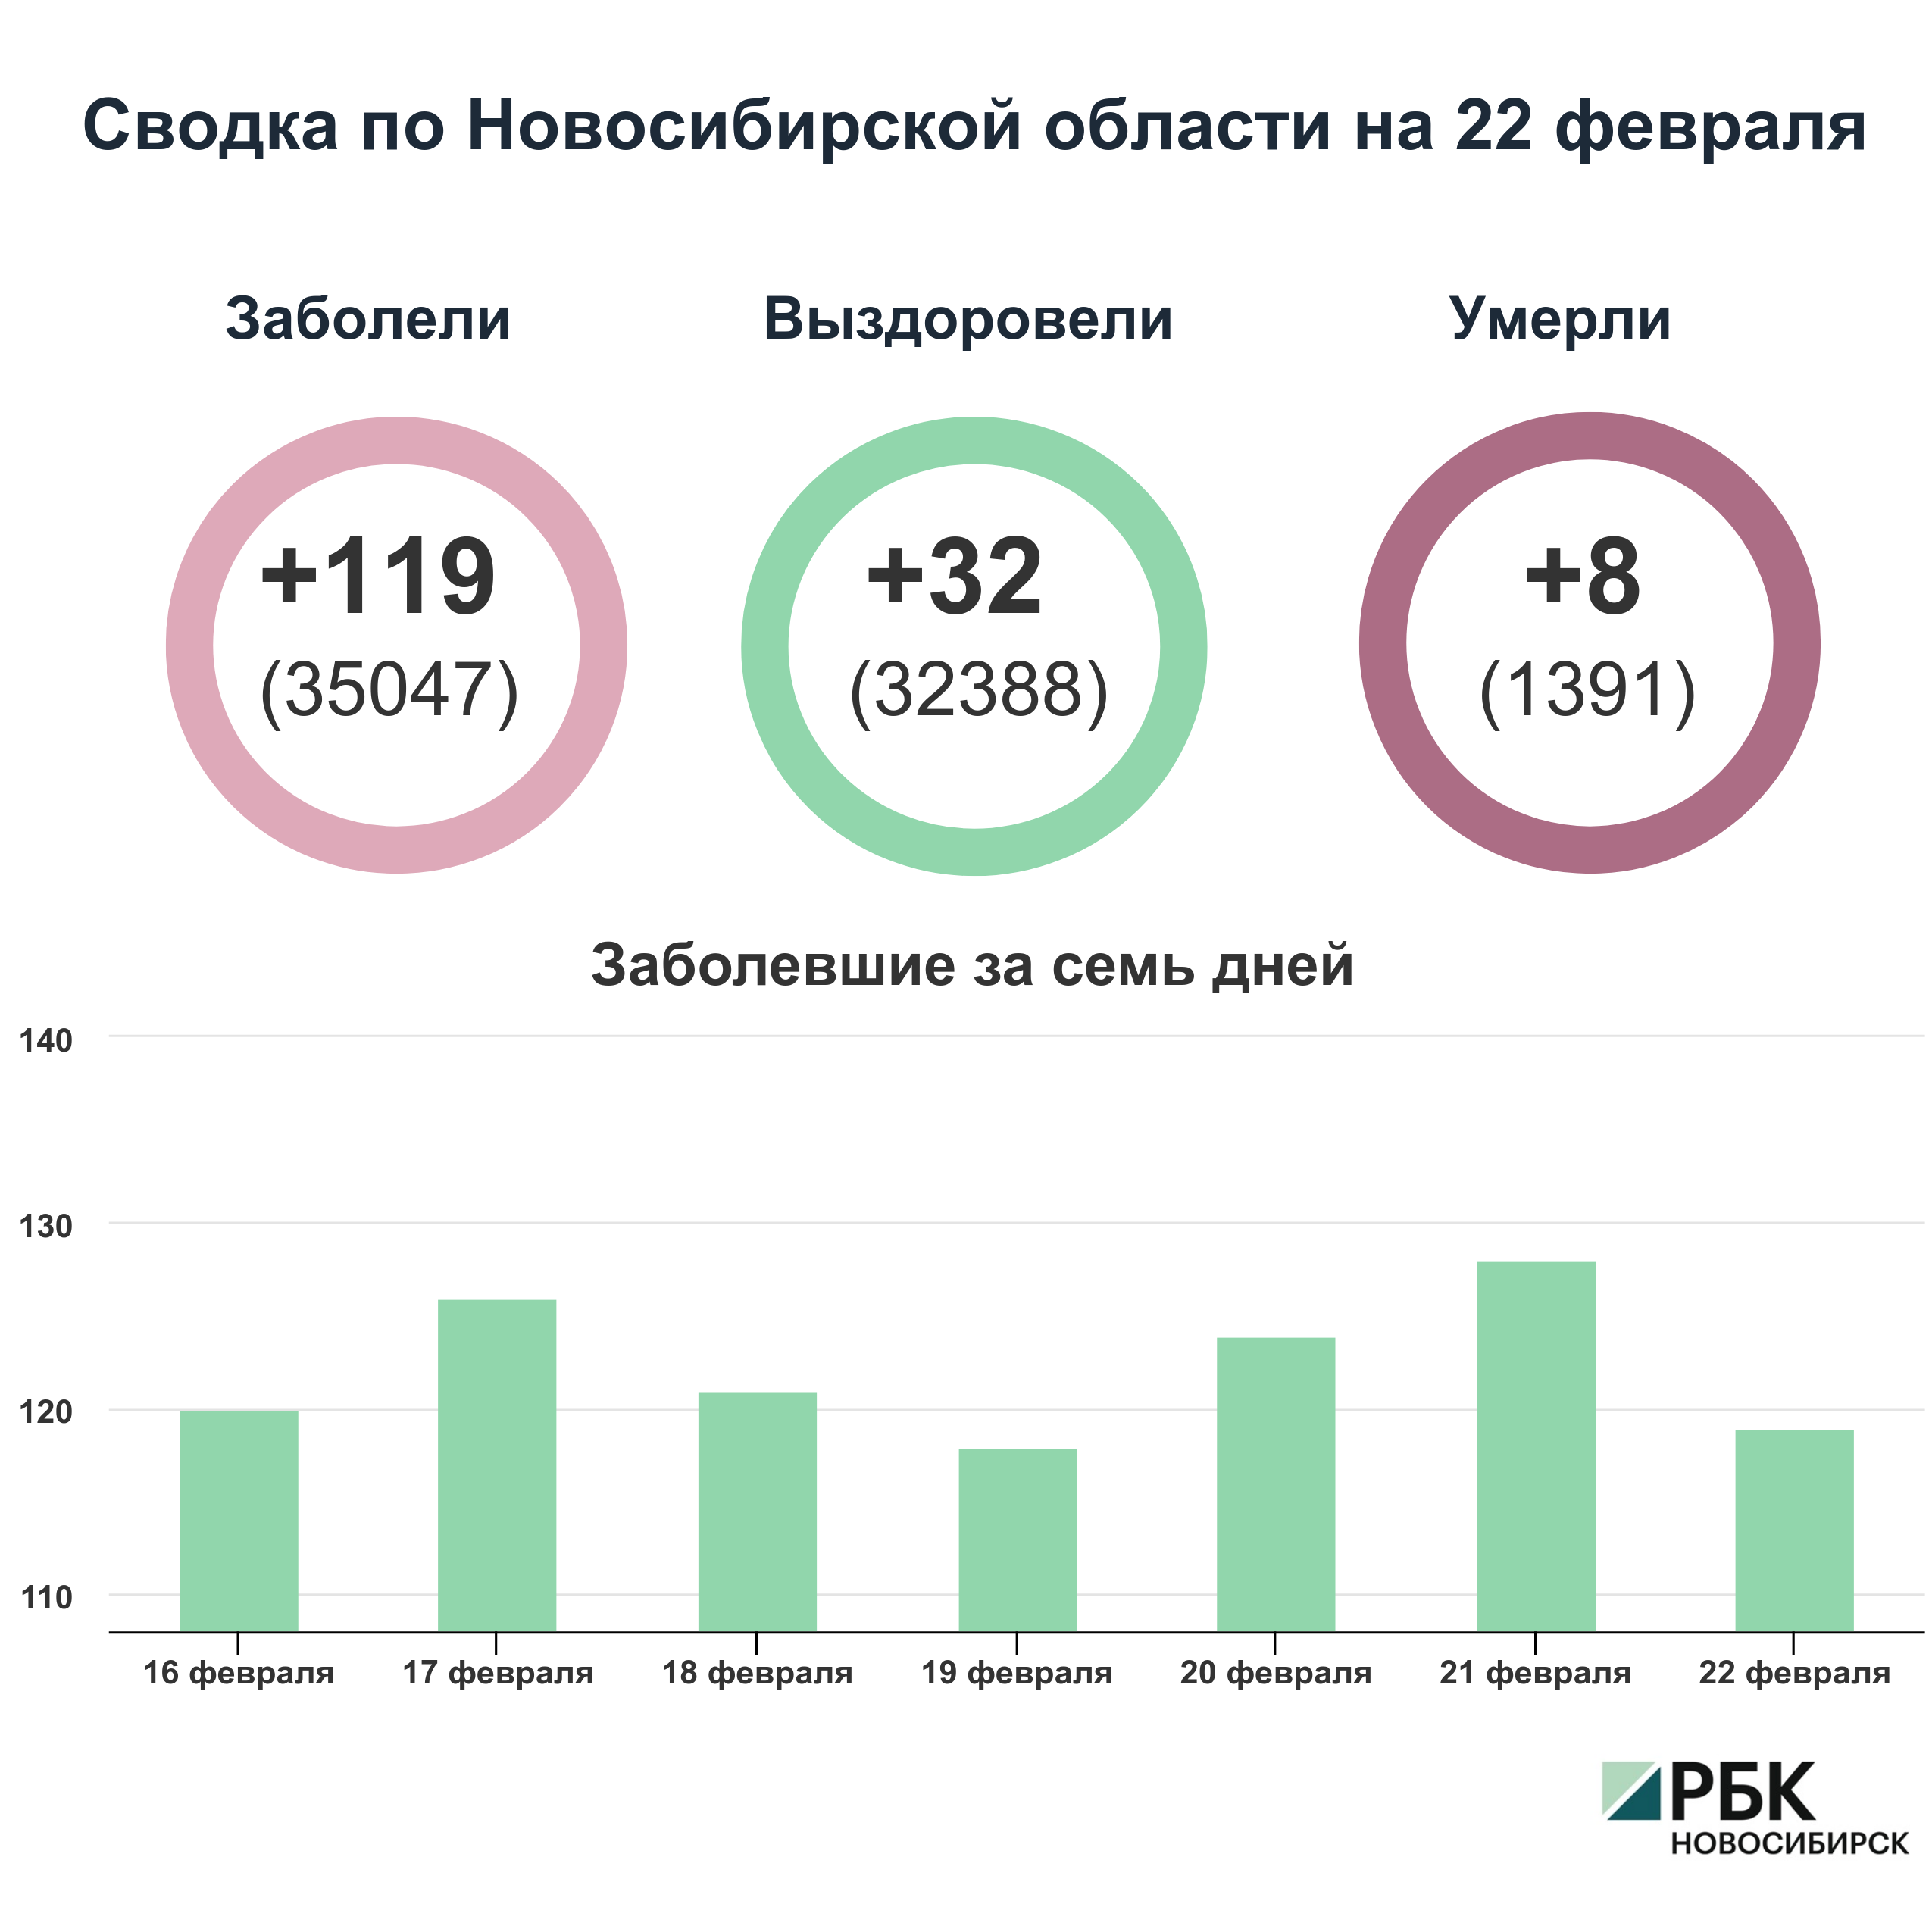 Коронавирус в Новосибирске: сводка на 22 февраля